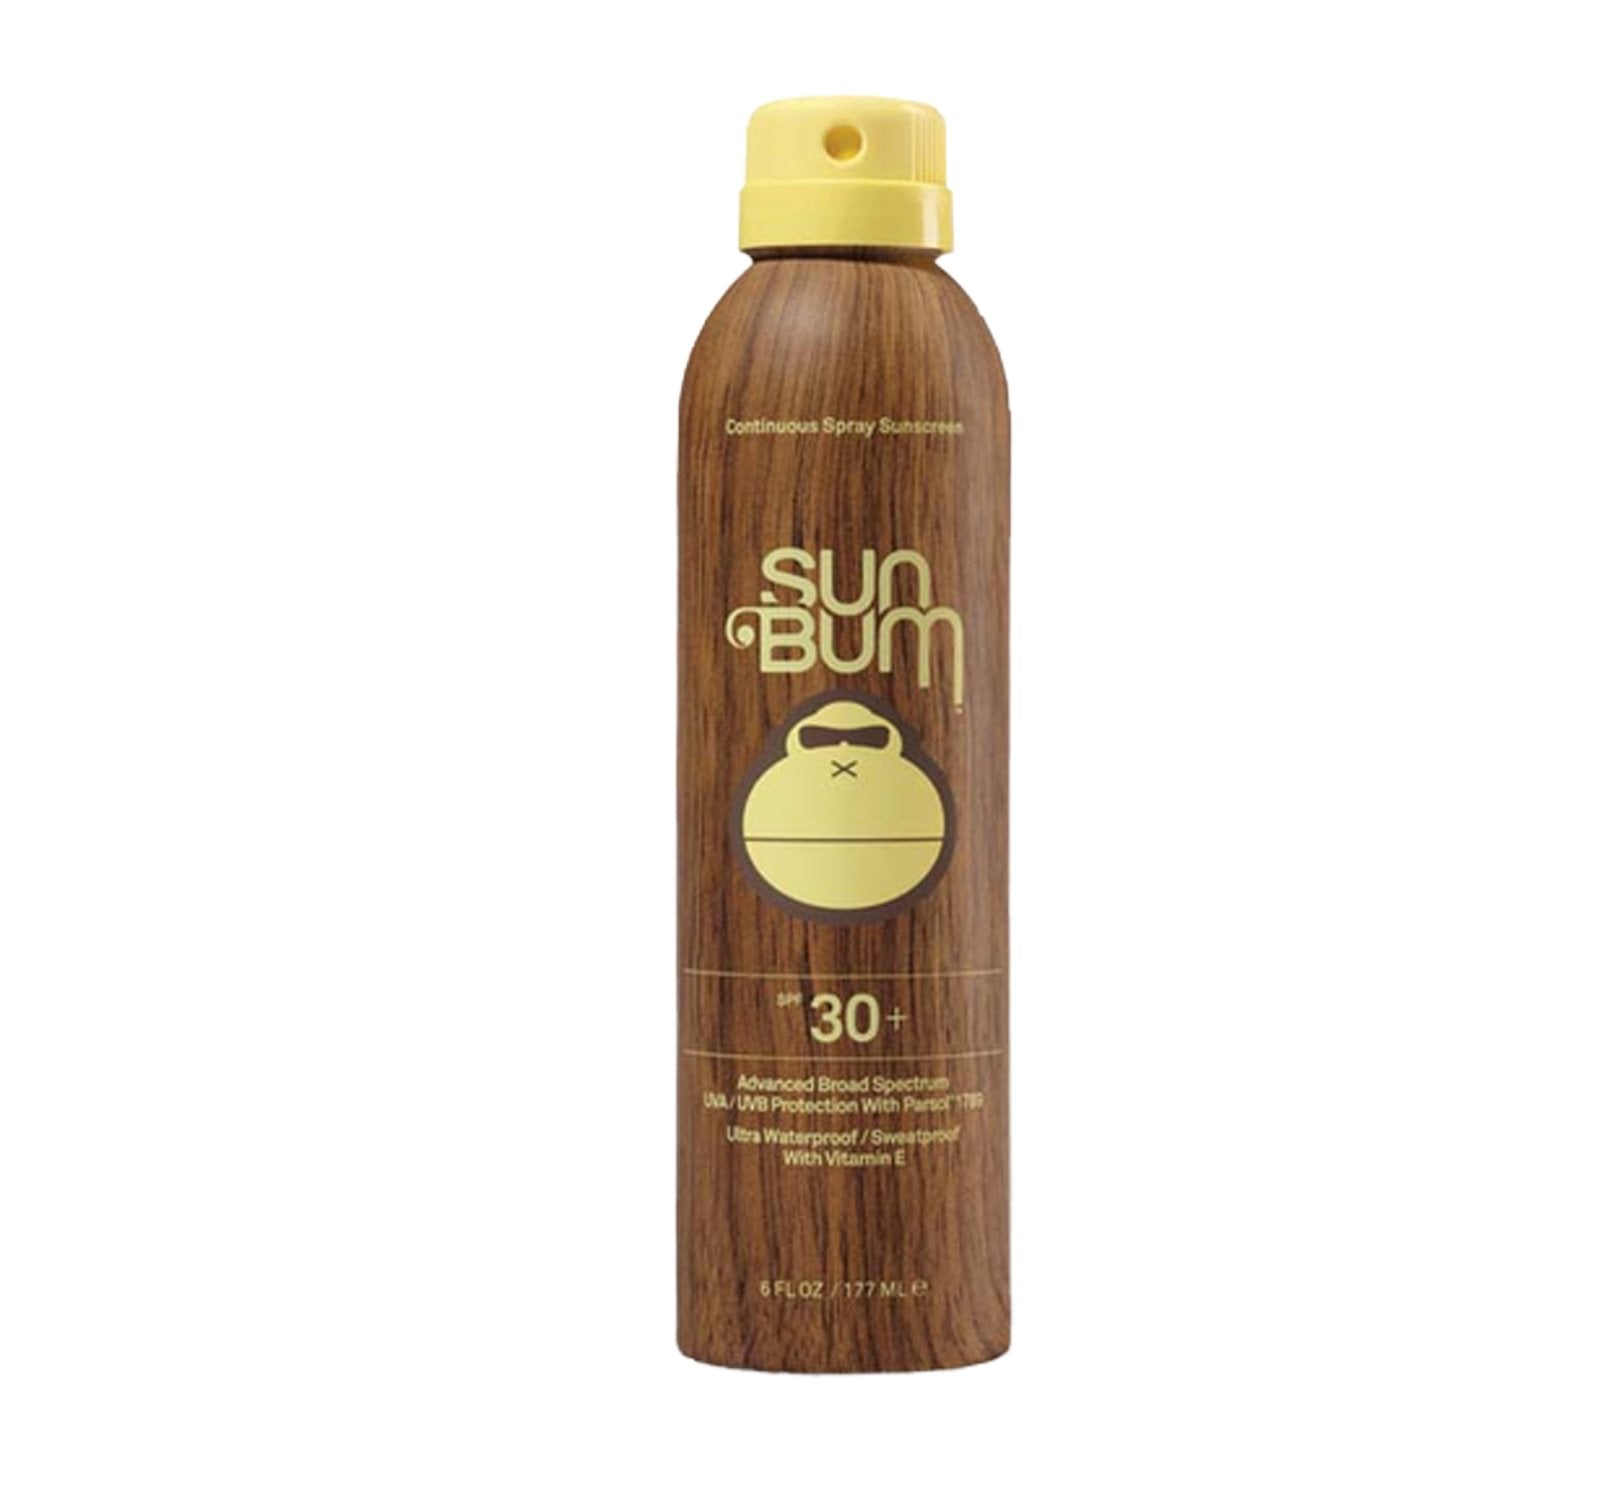 Sun Bum Continuous Spray SPF 30 Sunscreen